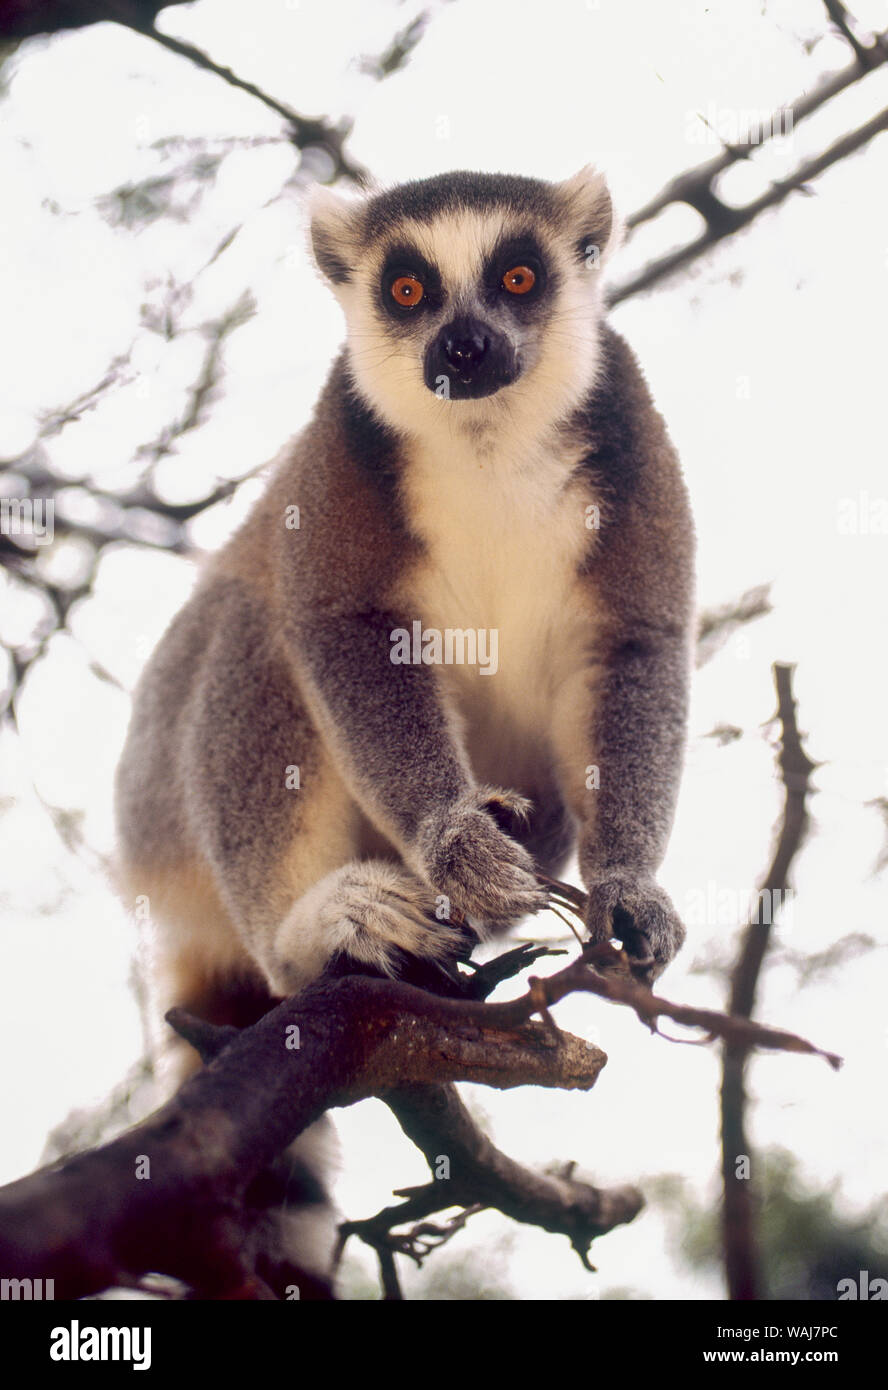 Ring-tailed lemurs (Lemur catta), Madagascar, captive Stock Photo